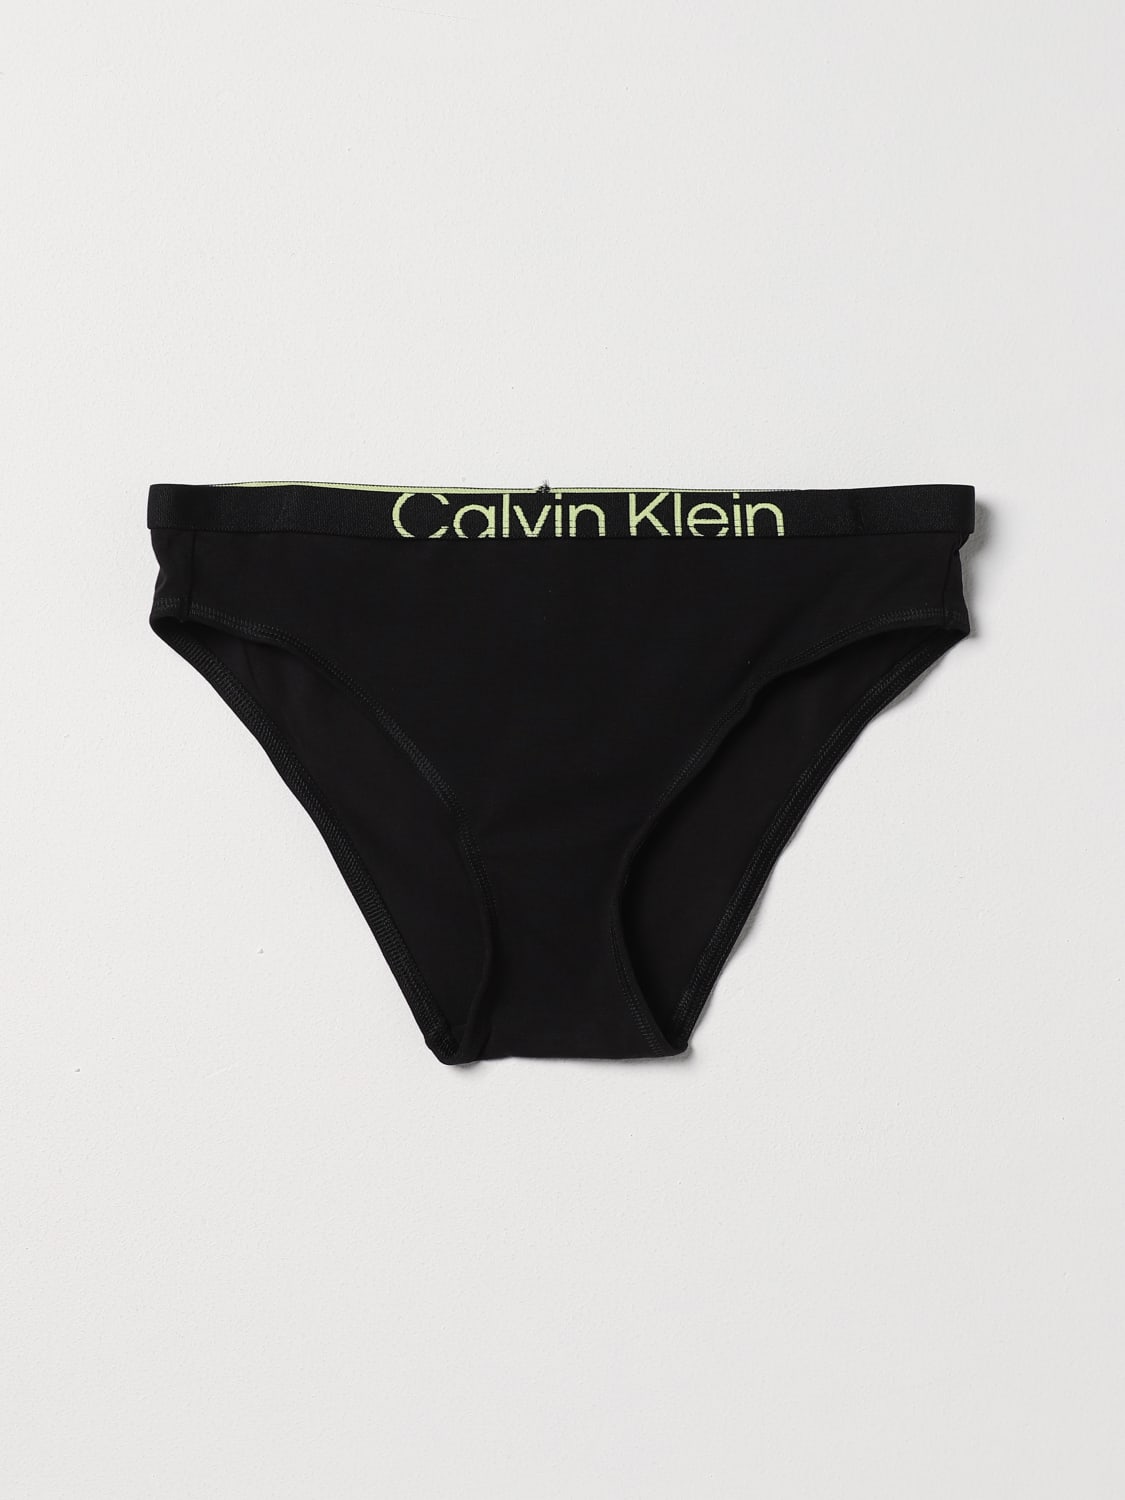 CALVIN KLEIN UNDERWEAR: Lingerie femme - Noir  Lingerie Calvin Klein  Underwear 000QF7403E en ligne sur